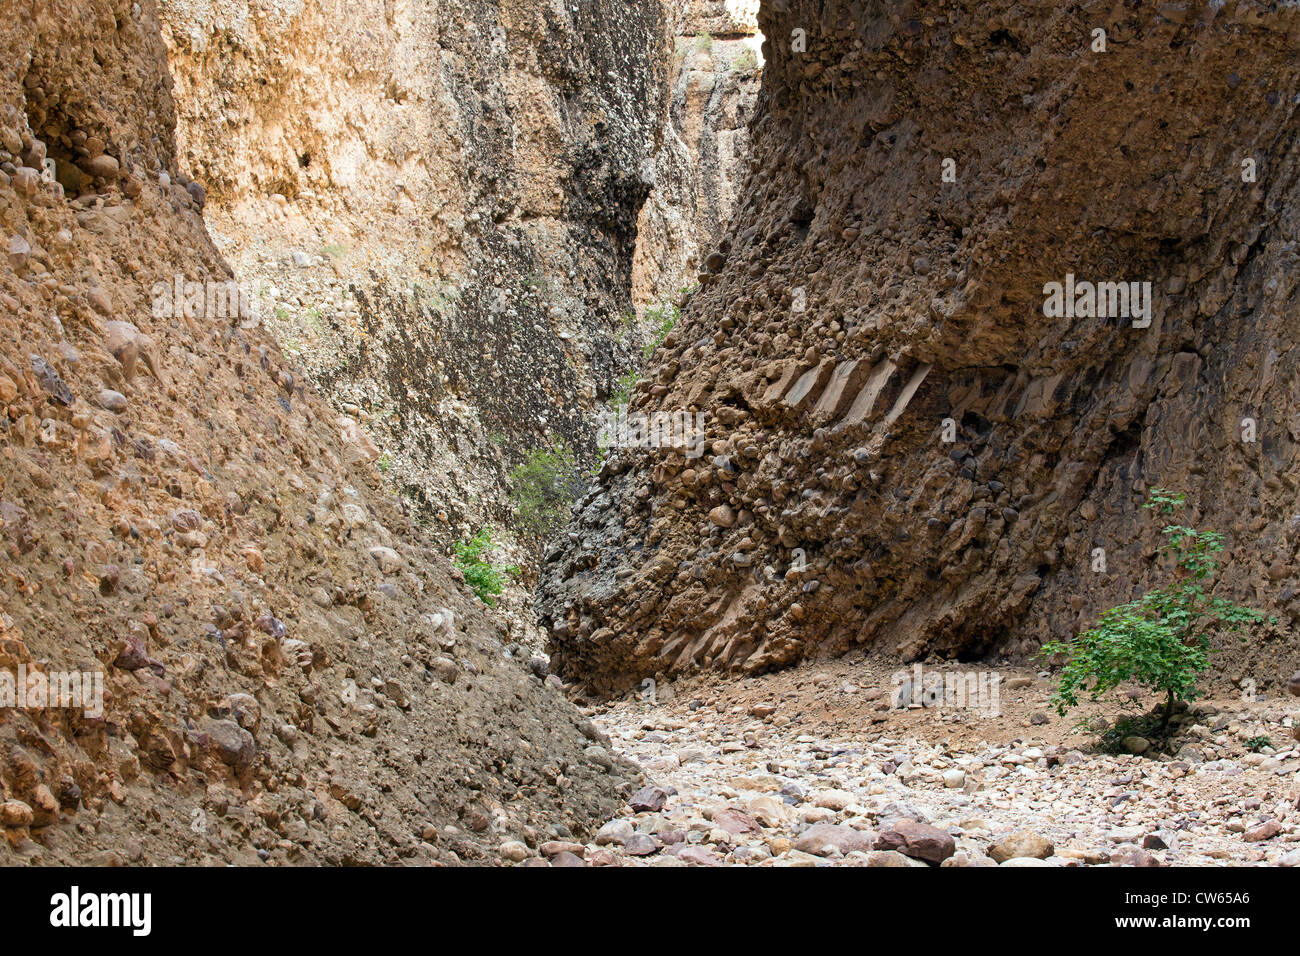 Innenraum eines Box-Canyons in zentrale Utah zeigen geologische Formationen aus Konglomerat Gestein, beliebter Treffpunkt für Kletterer. Stockfoto